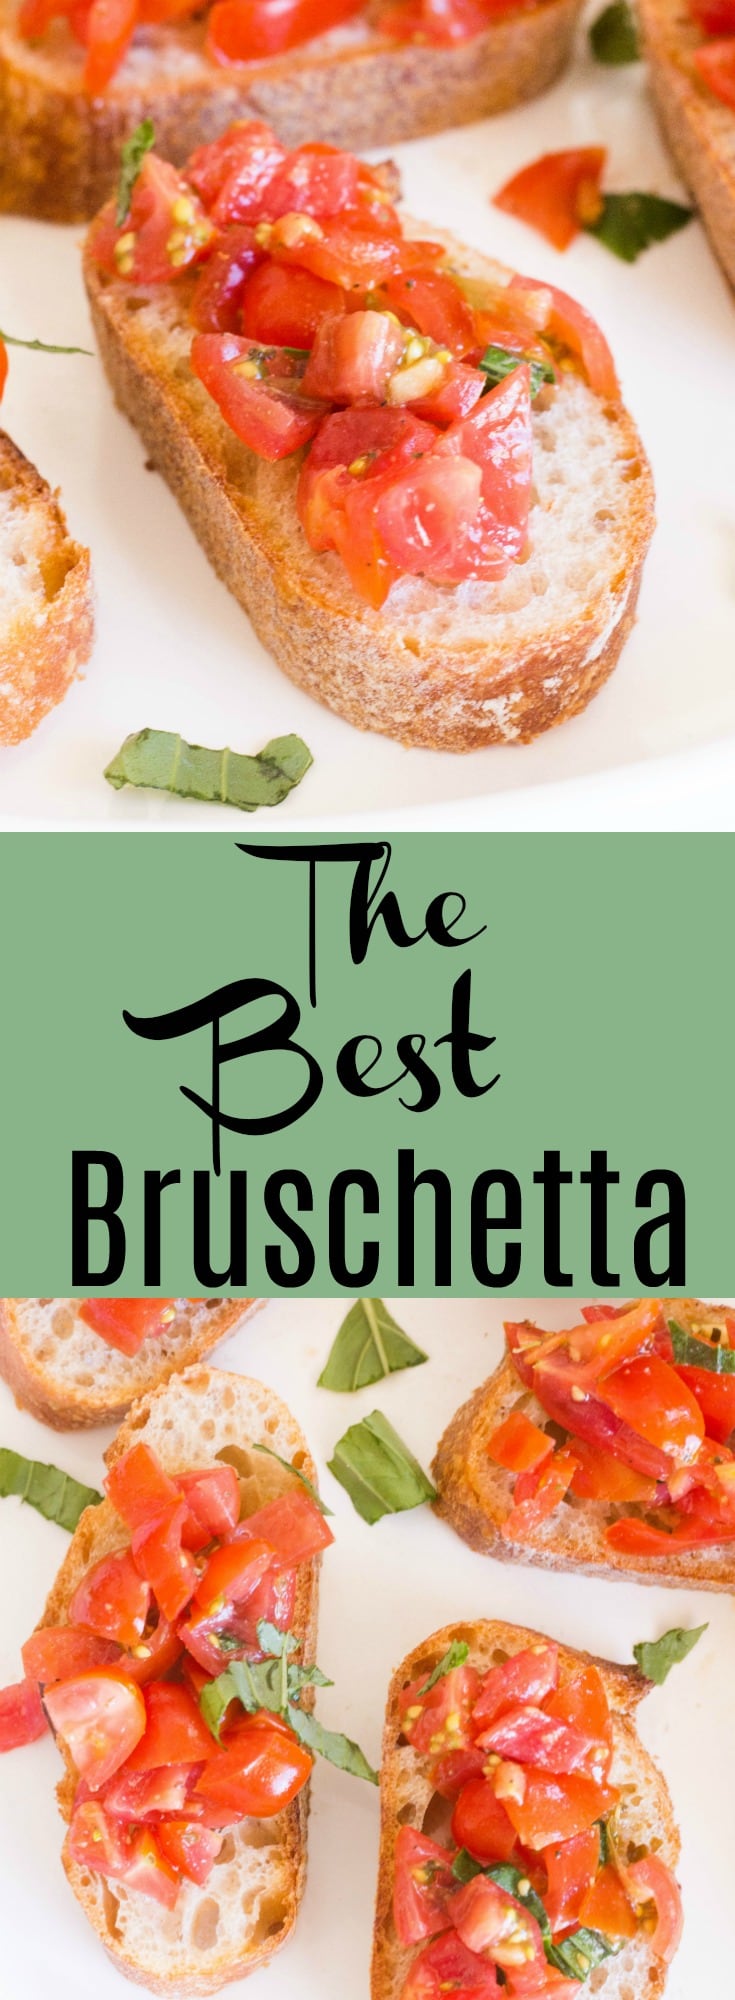 The Best Bruschetta